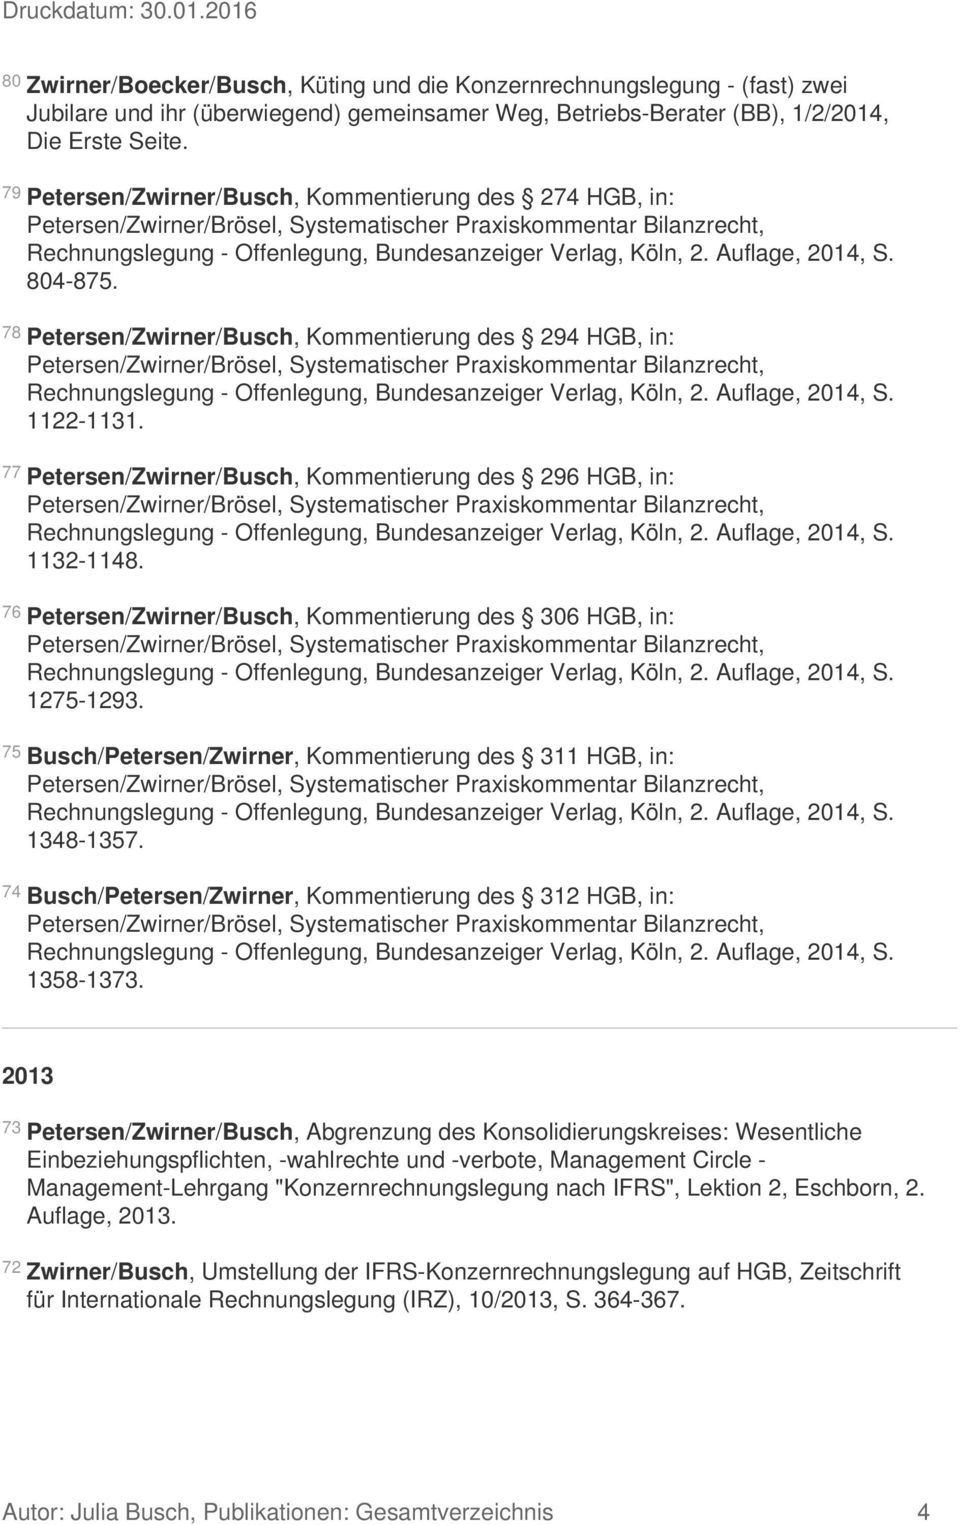 77 Petersen/Zwirner/Busch, Kommentierung des 296 HGB, in: 1132-1148. 76 Petersen/Zwirner/Busch, Kommentierung des 306 HGB, in: 1275-1293.